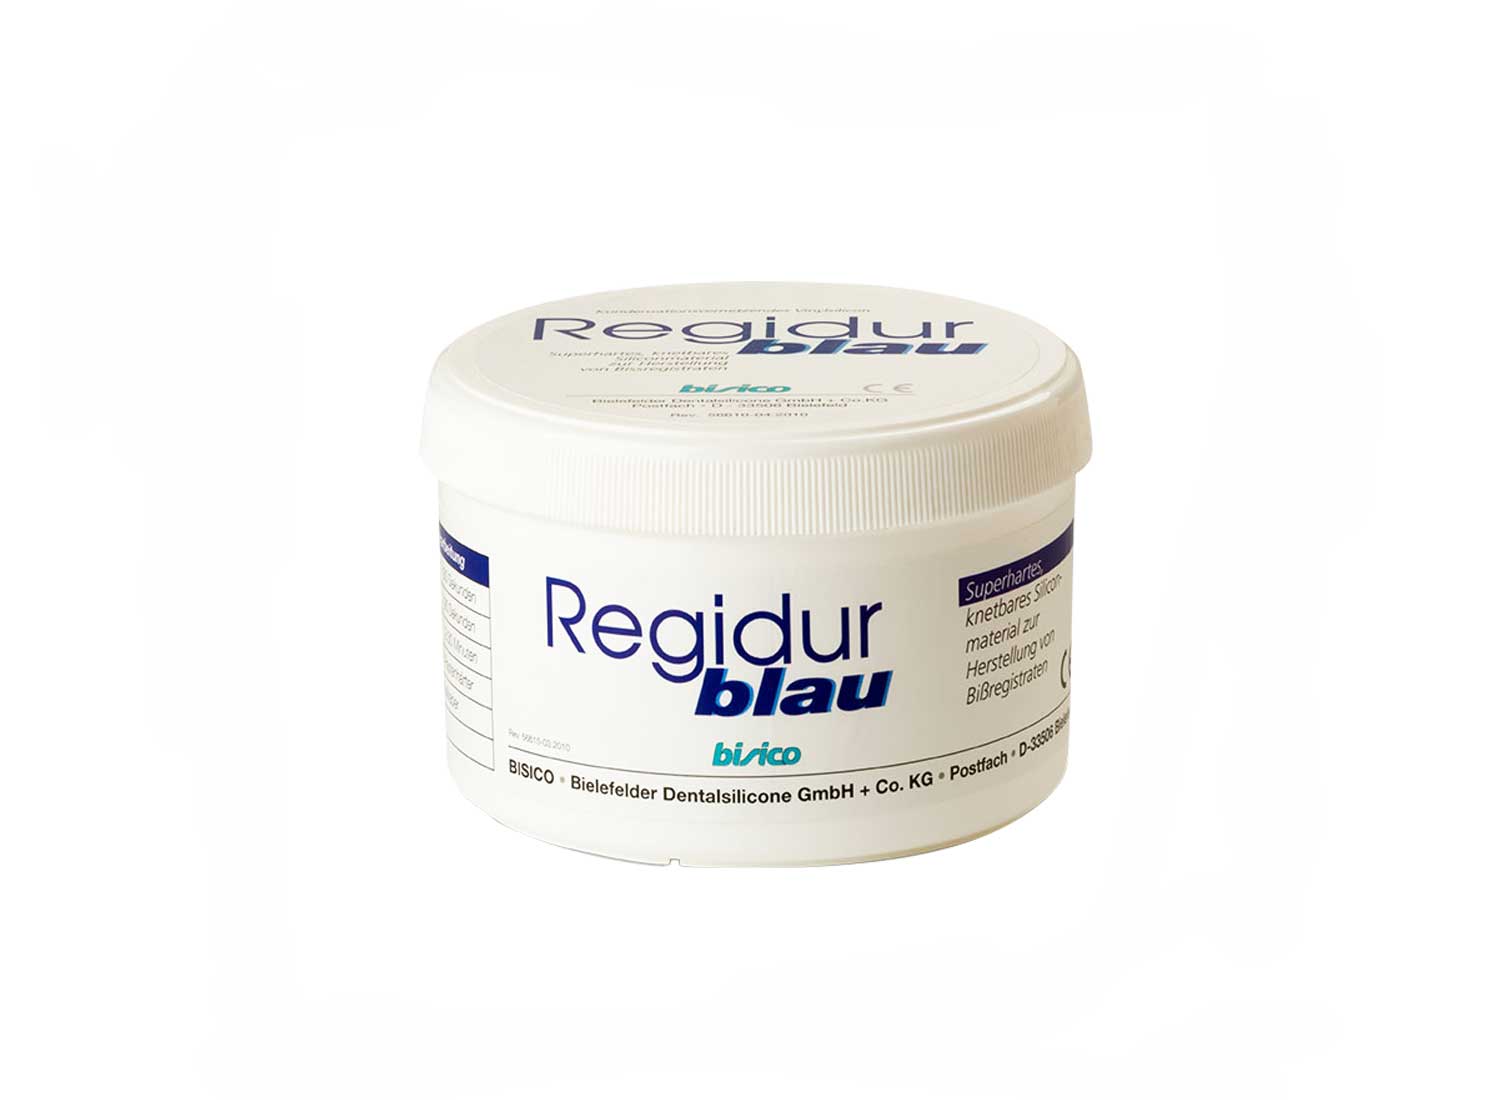 پوتی قالبگیری سیلیکونی Regidur Blue برند Bisico